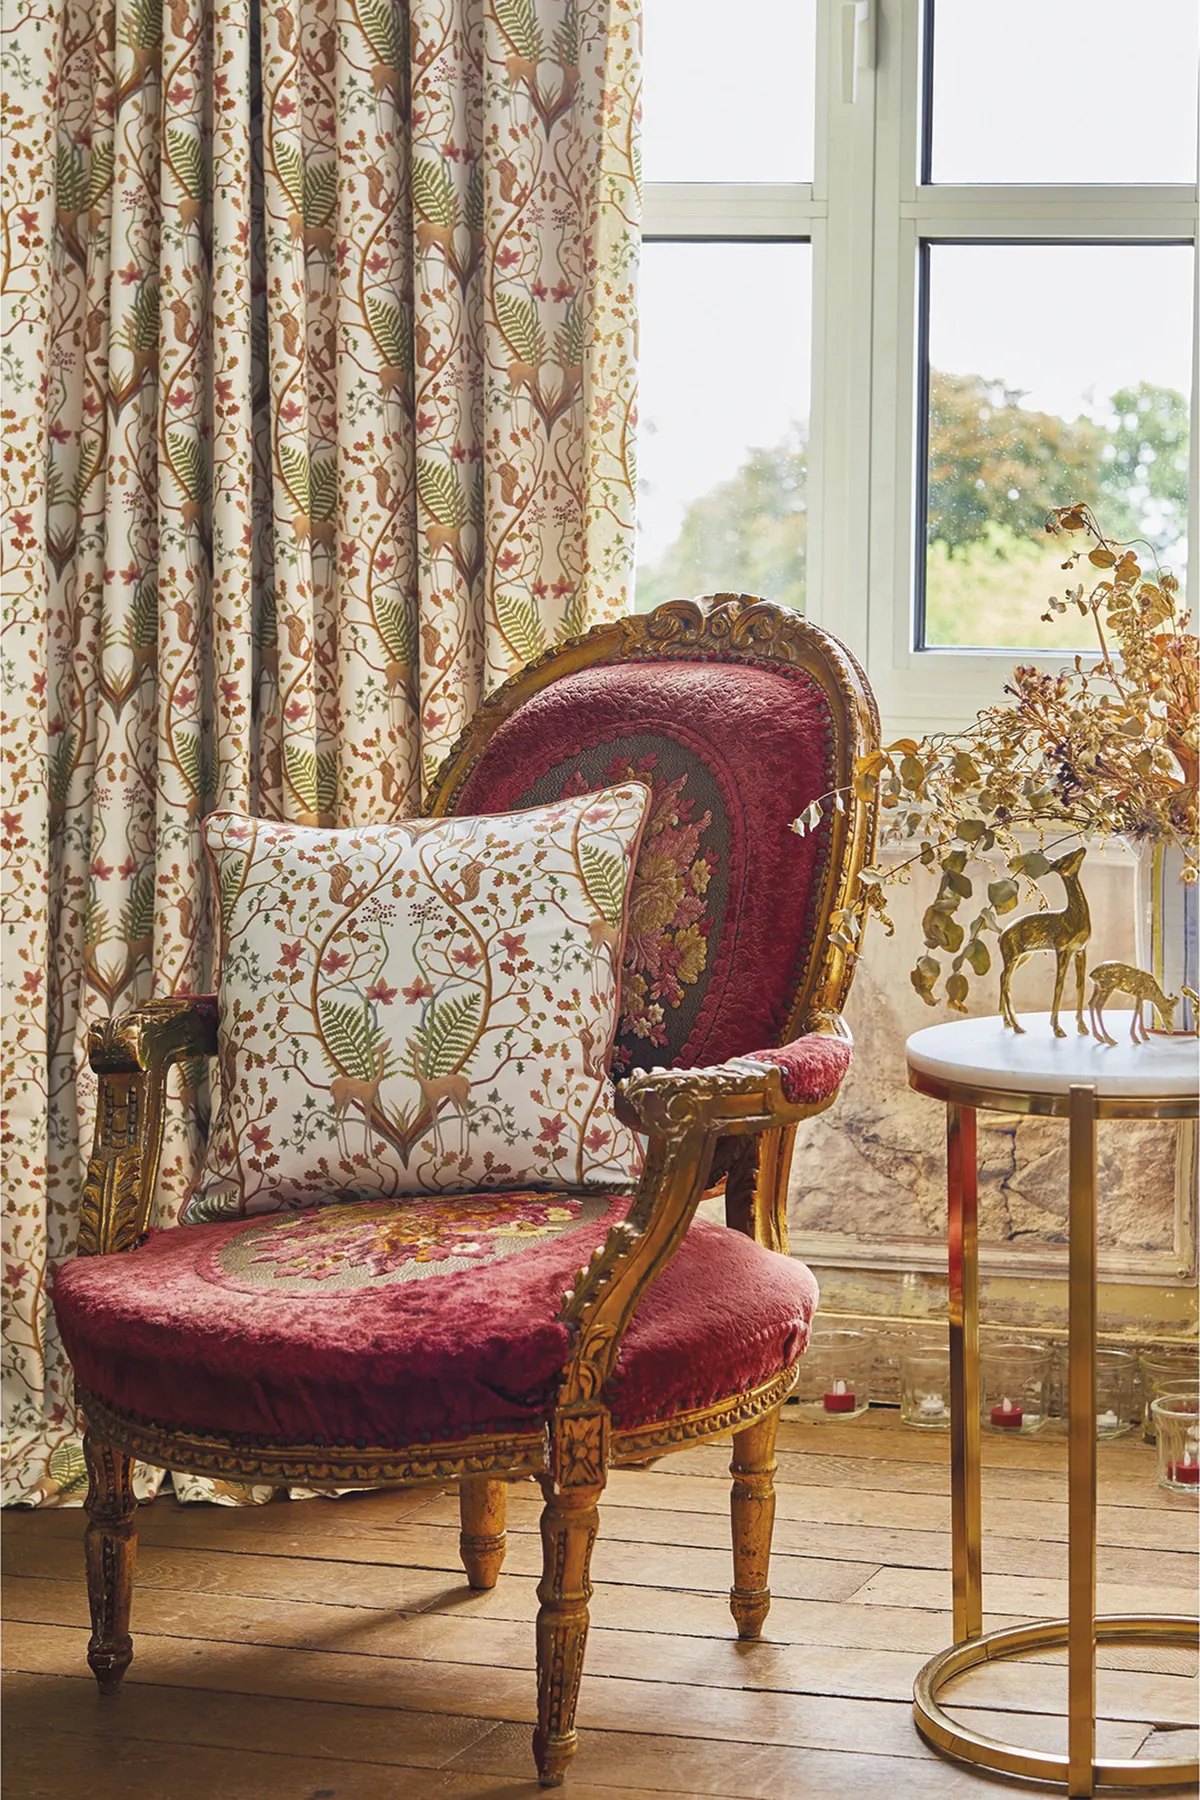 The Chateau by Angel Strawbridge Woodland Trail cushion in cream, £30, Next